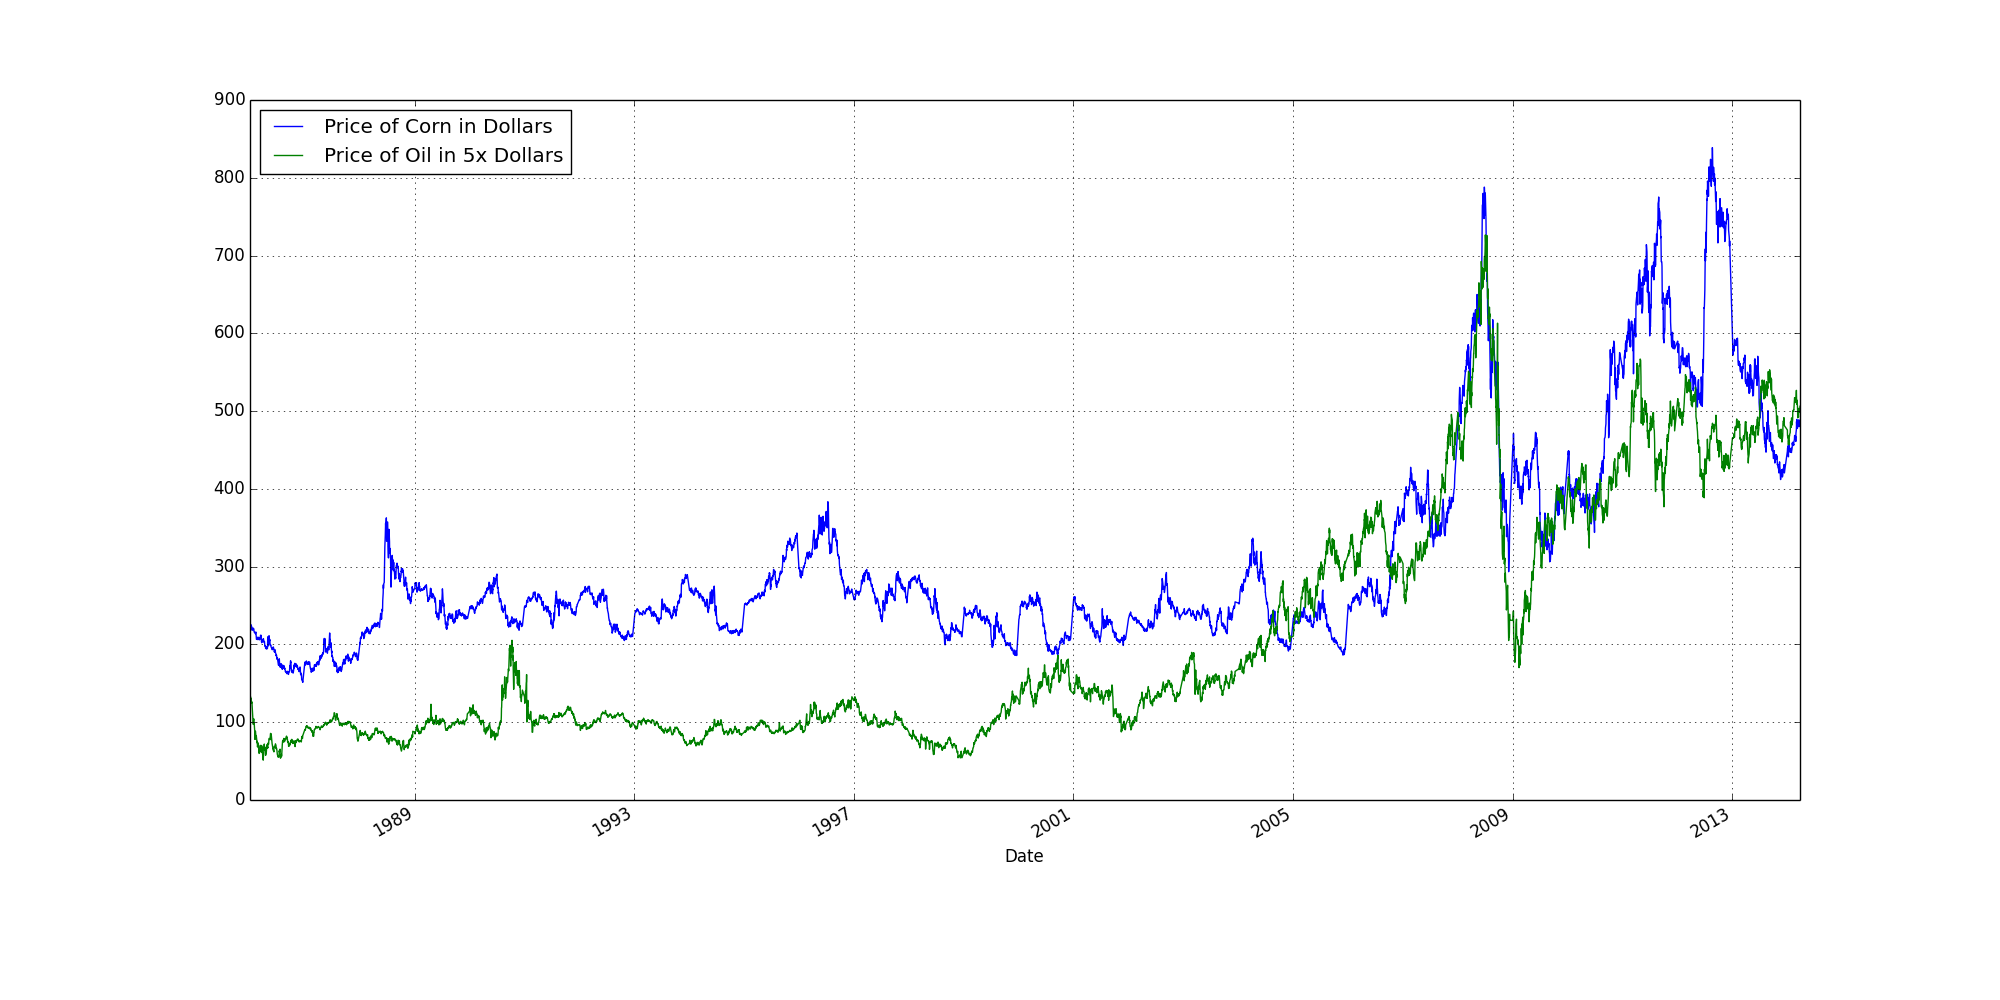 Corn and Oil Graph Price vs Date Line Graph (Oil at 5x Price)